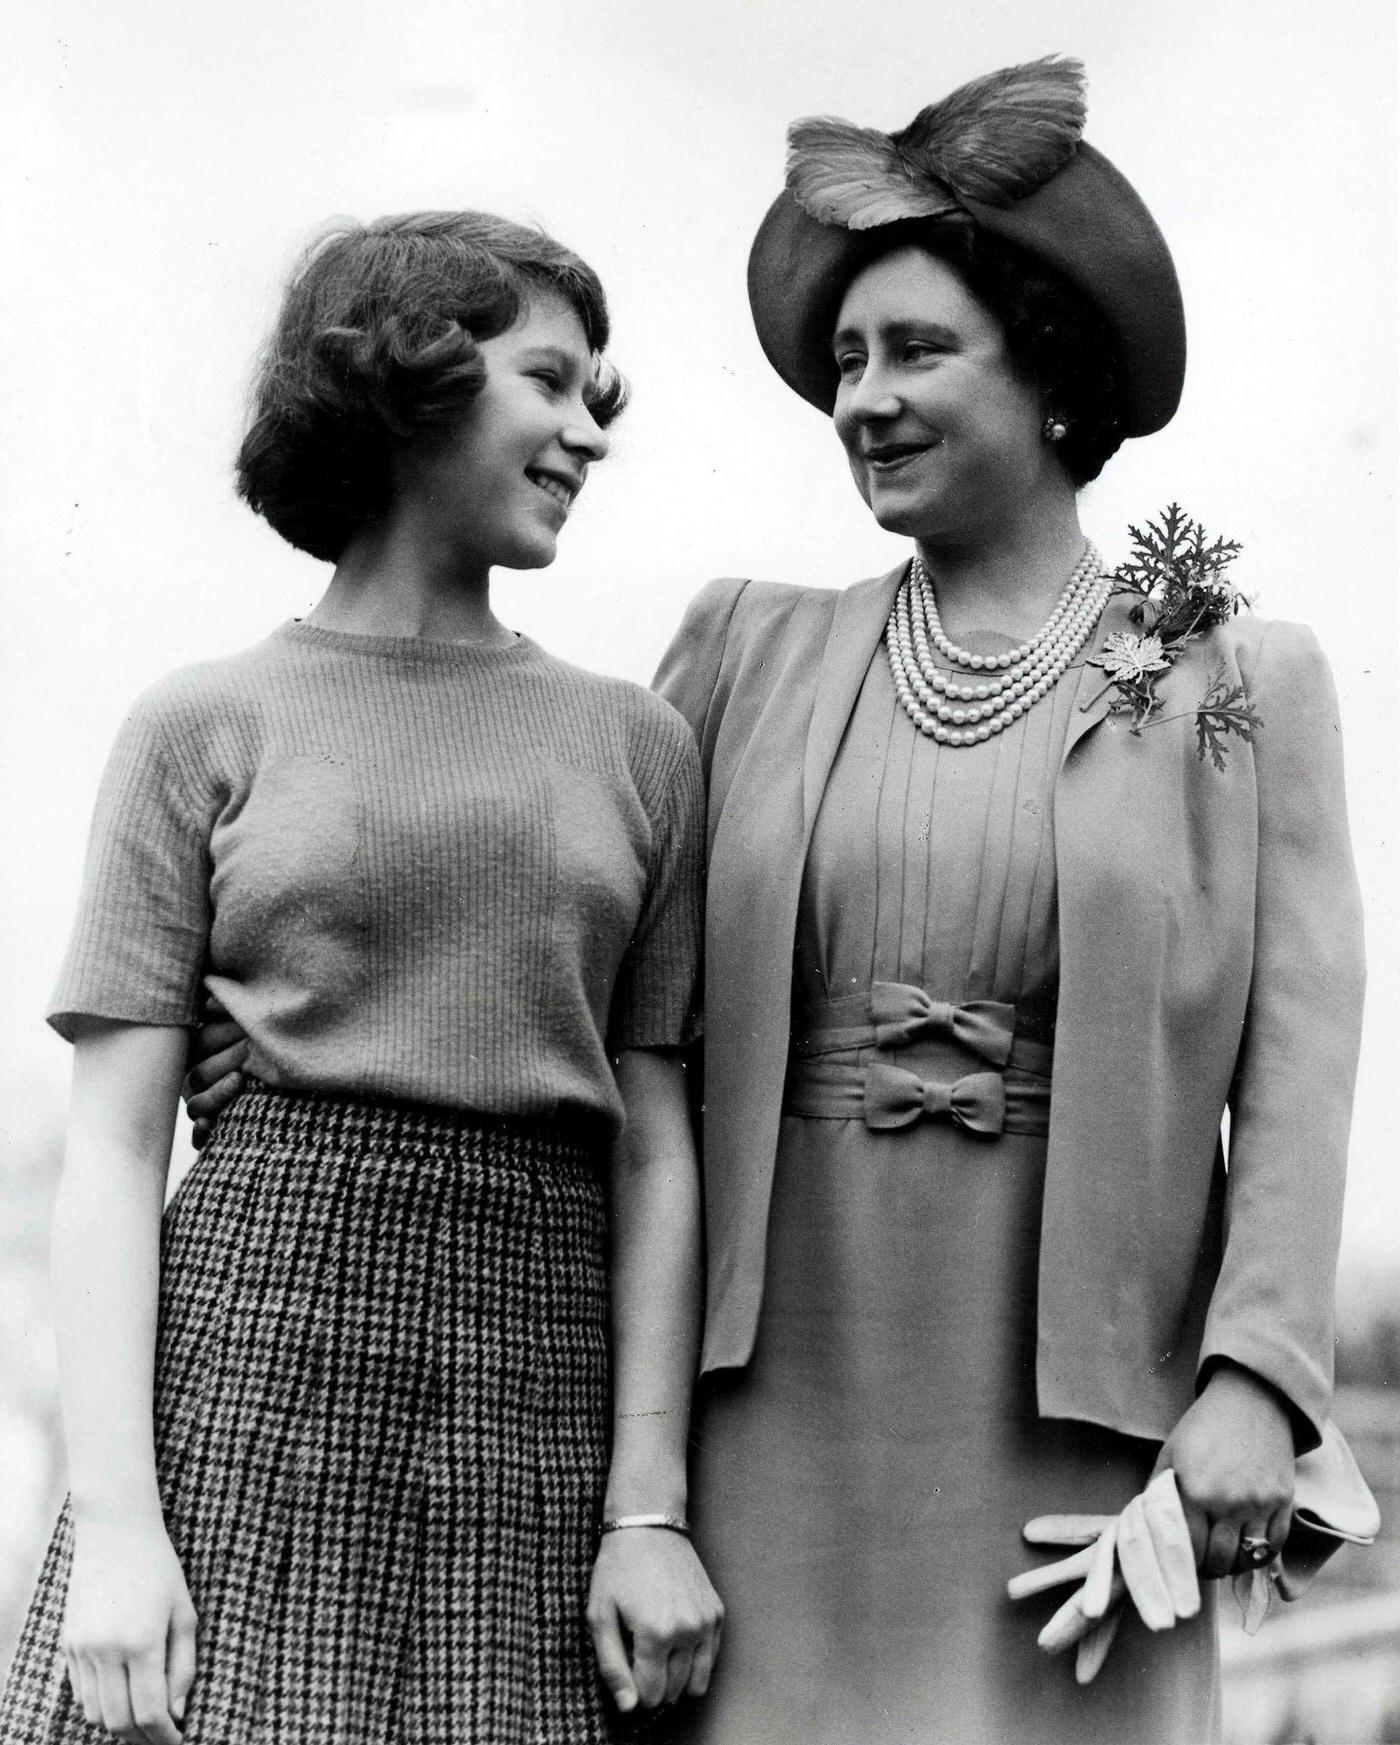 Queen Elizabeth with Princess Elizabeth at Royal Lodge, Windsor, Berkshire, April 1940.